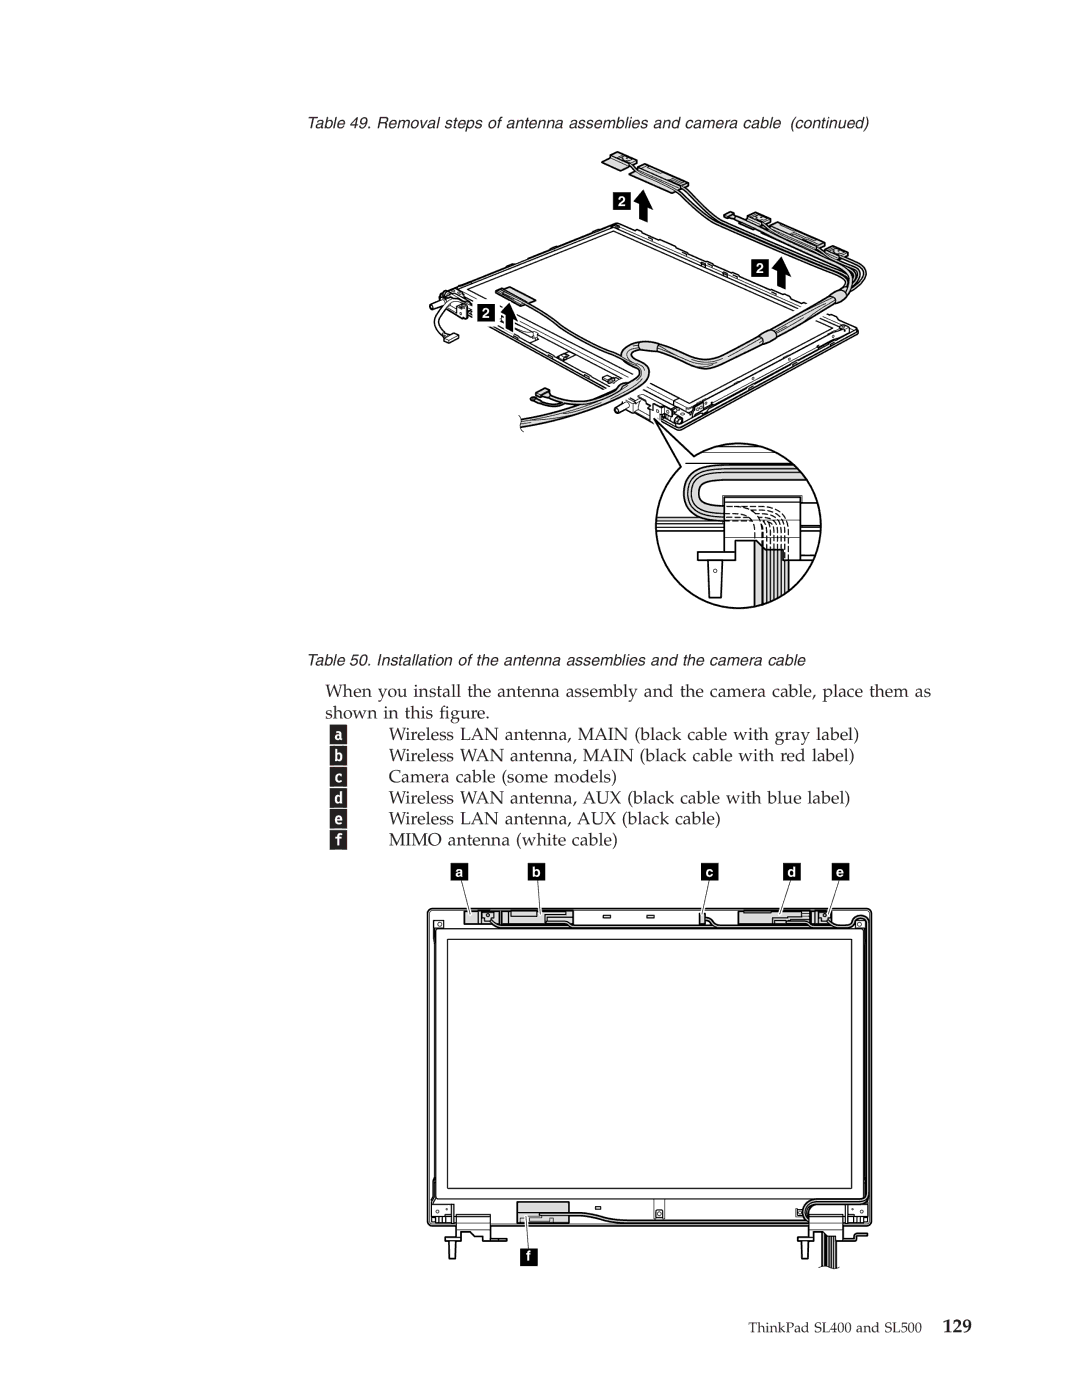 IBM manual ThinkPad SL400 and SL500 